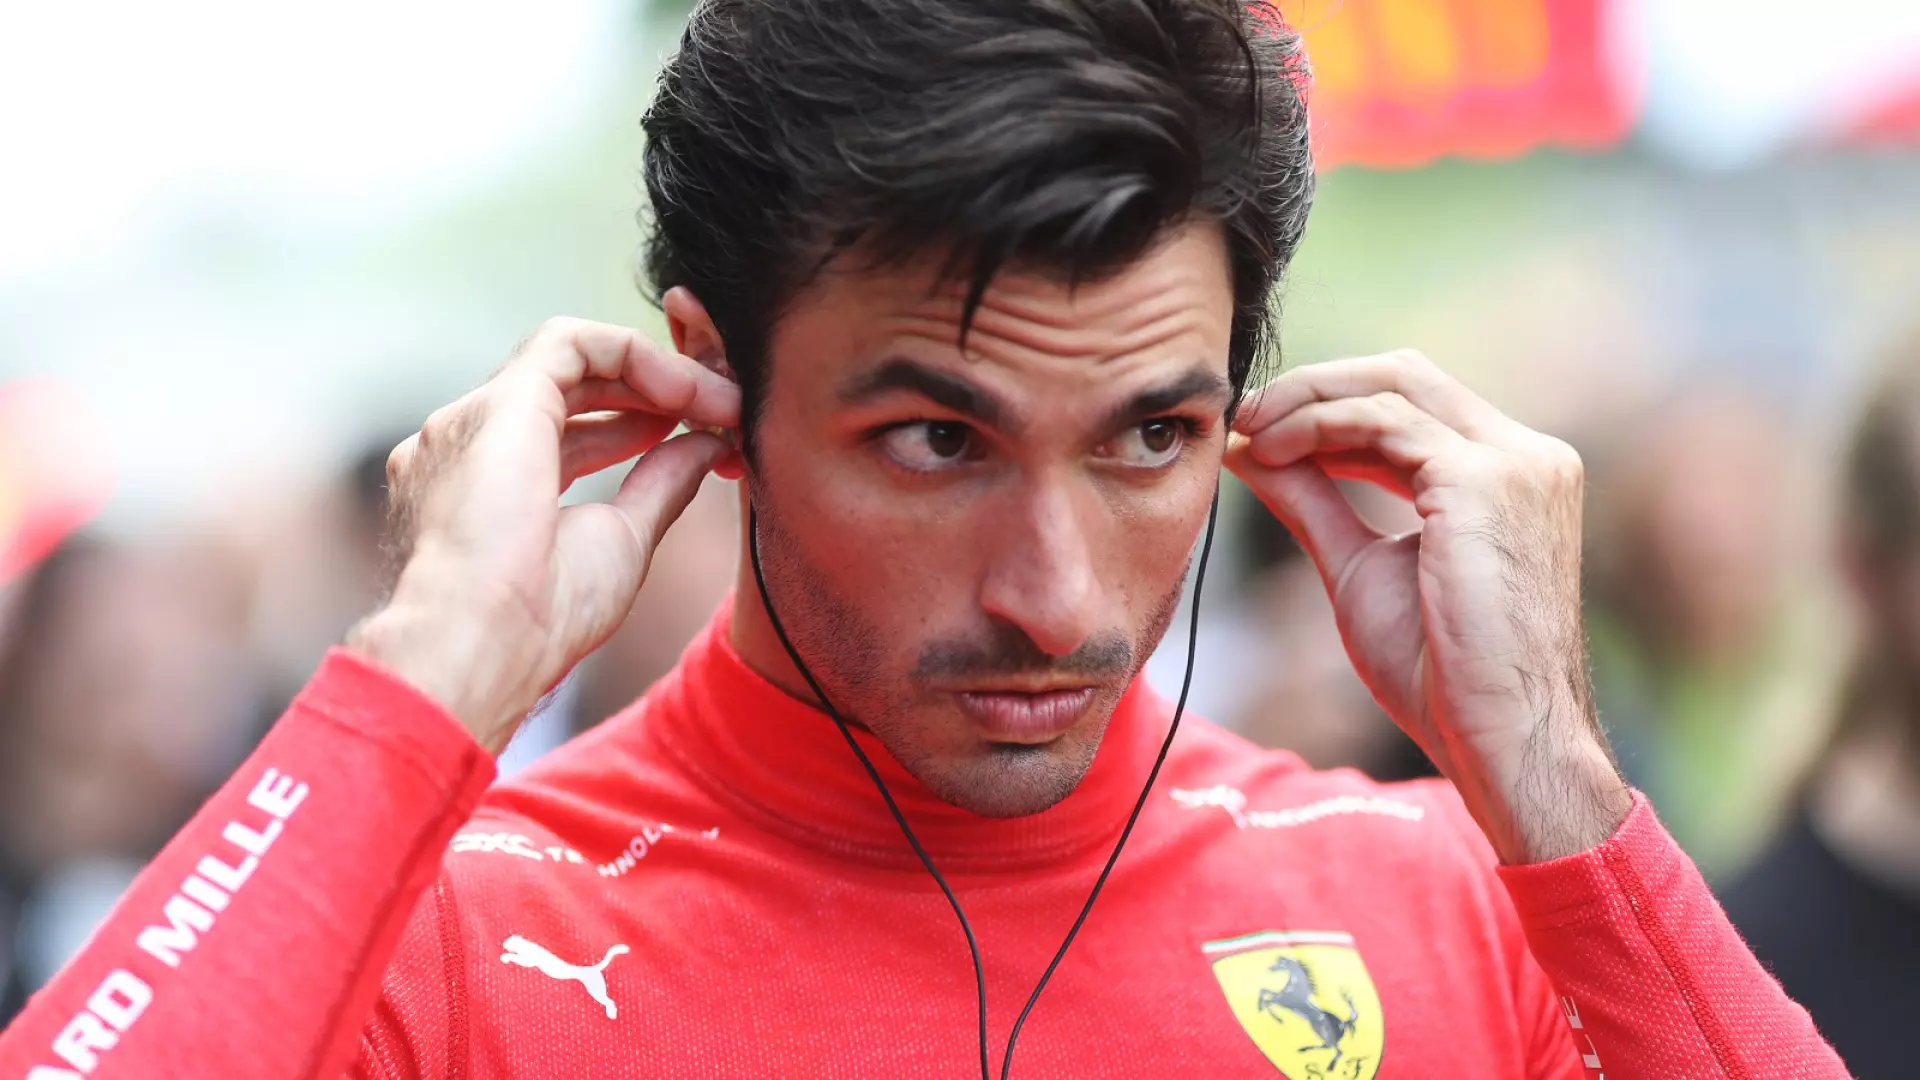 Carlos Sainz schietto: “Ferrari, podio lontanissimo”, ma rilancia per Monza